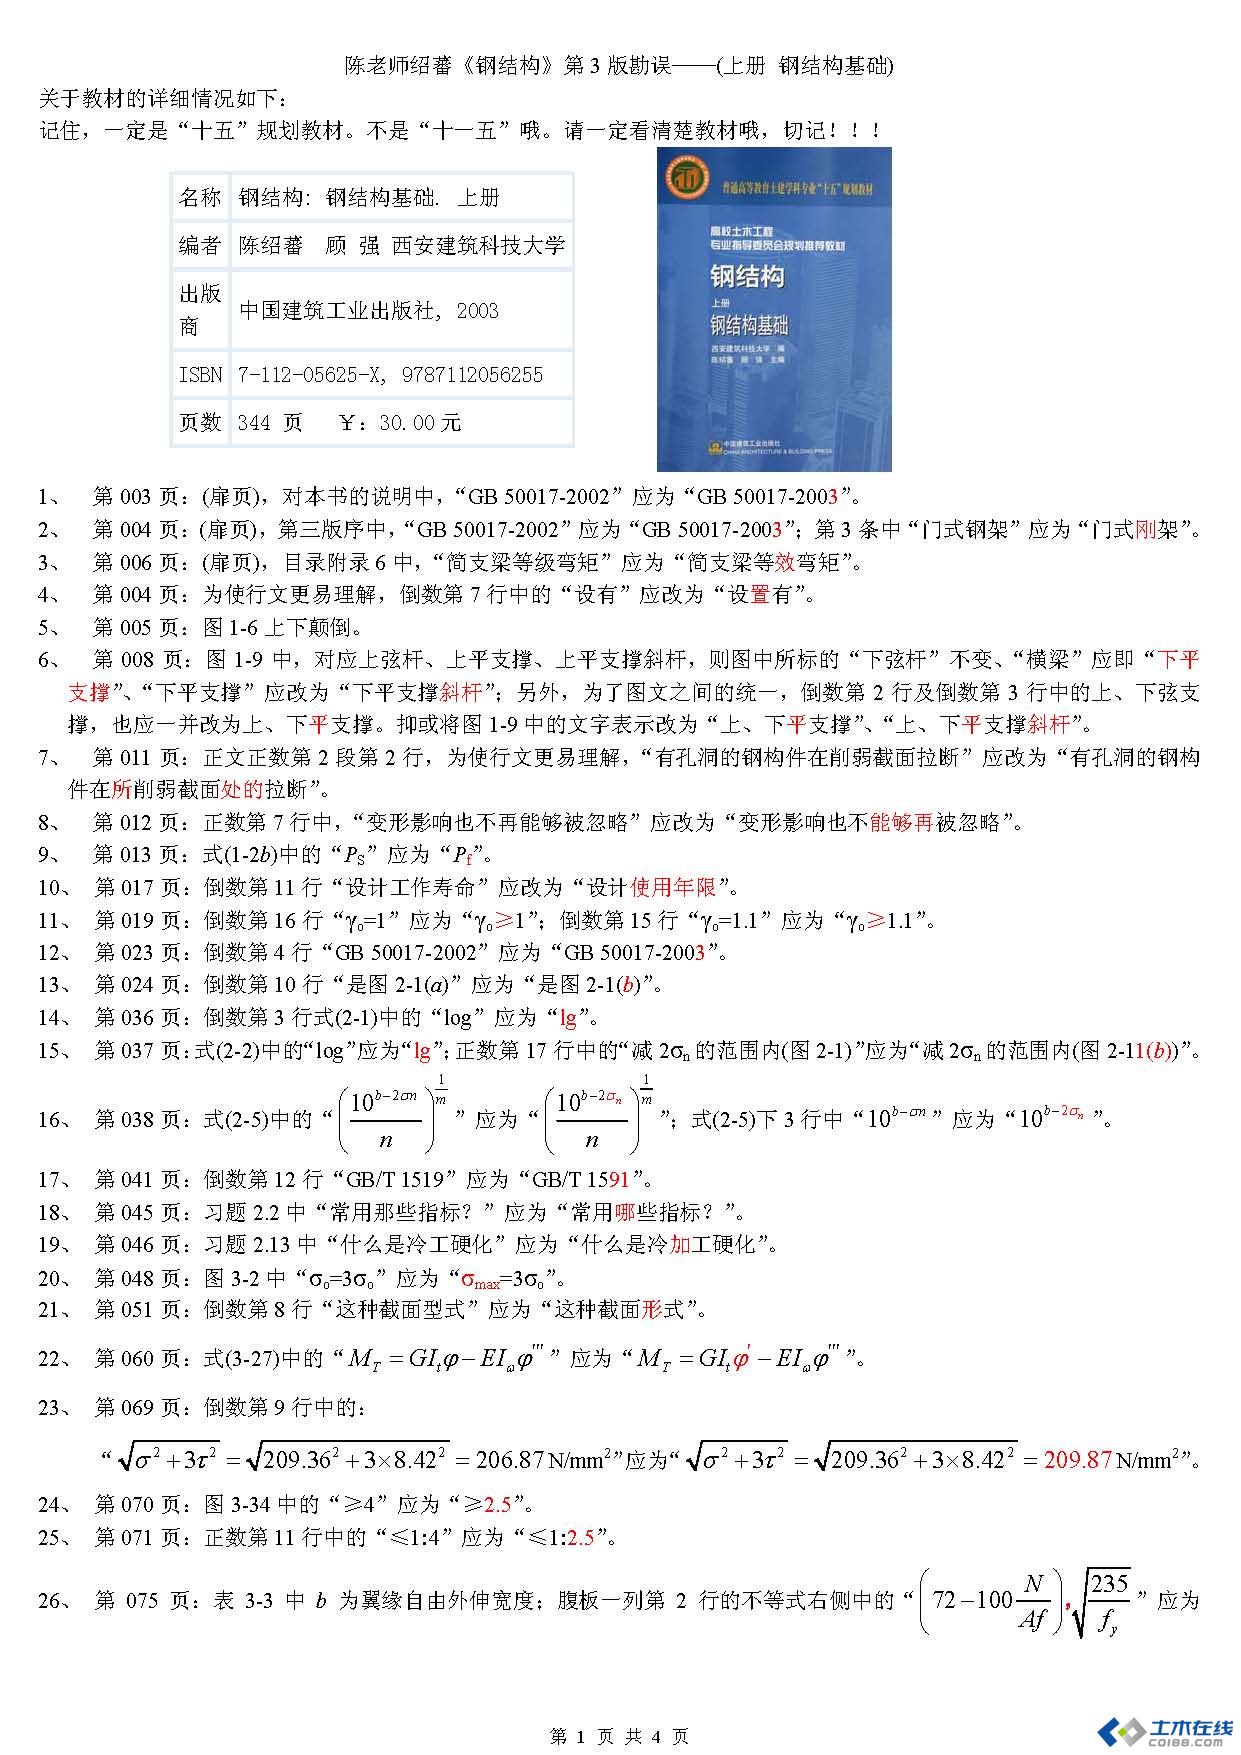 陈老师绍蕃《钢结构》第3版勘误-之1(共4页).jpg